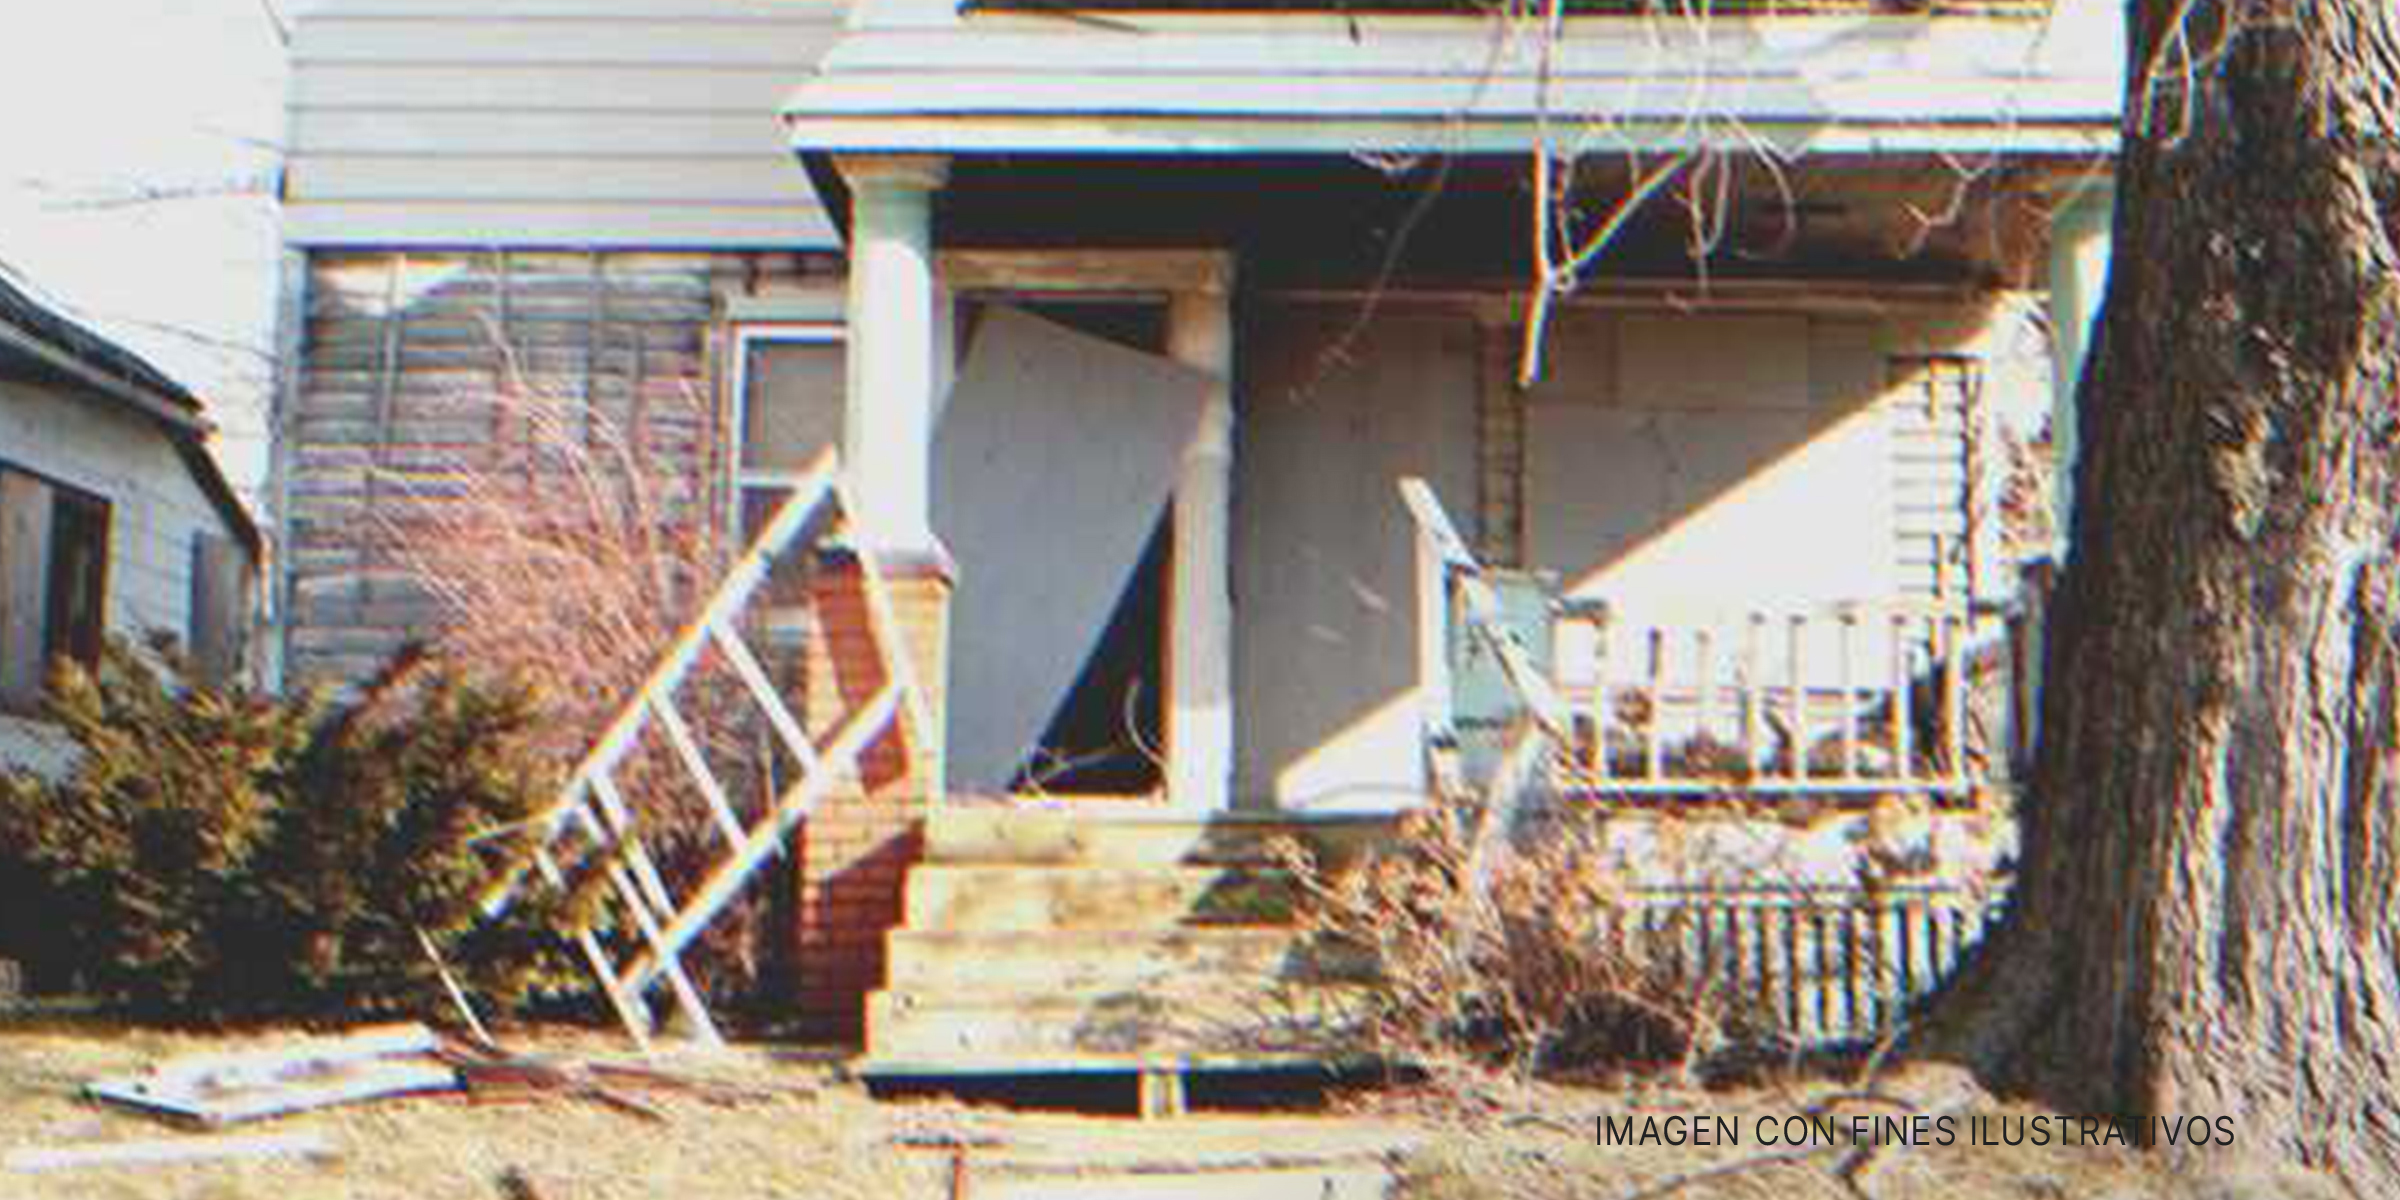 Casa en estado de abandono | Foto: flickr.com/davelamnet (CC BY 2.0)